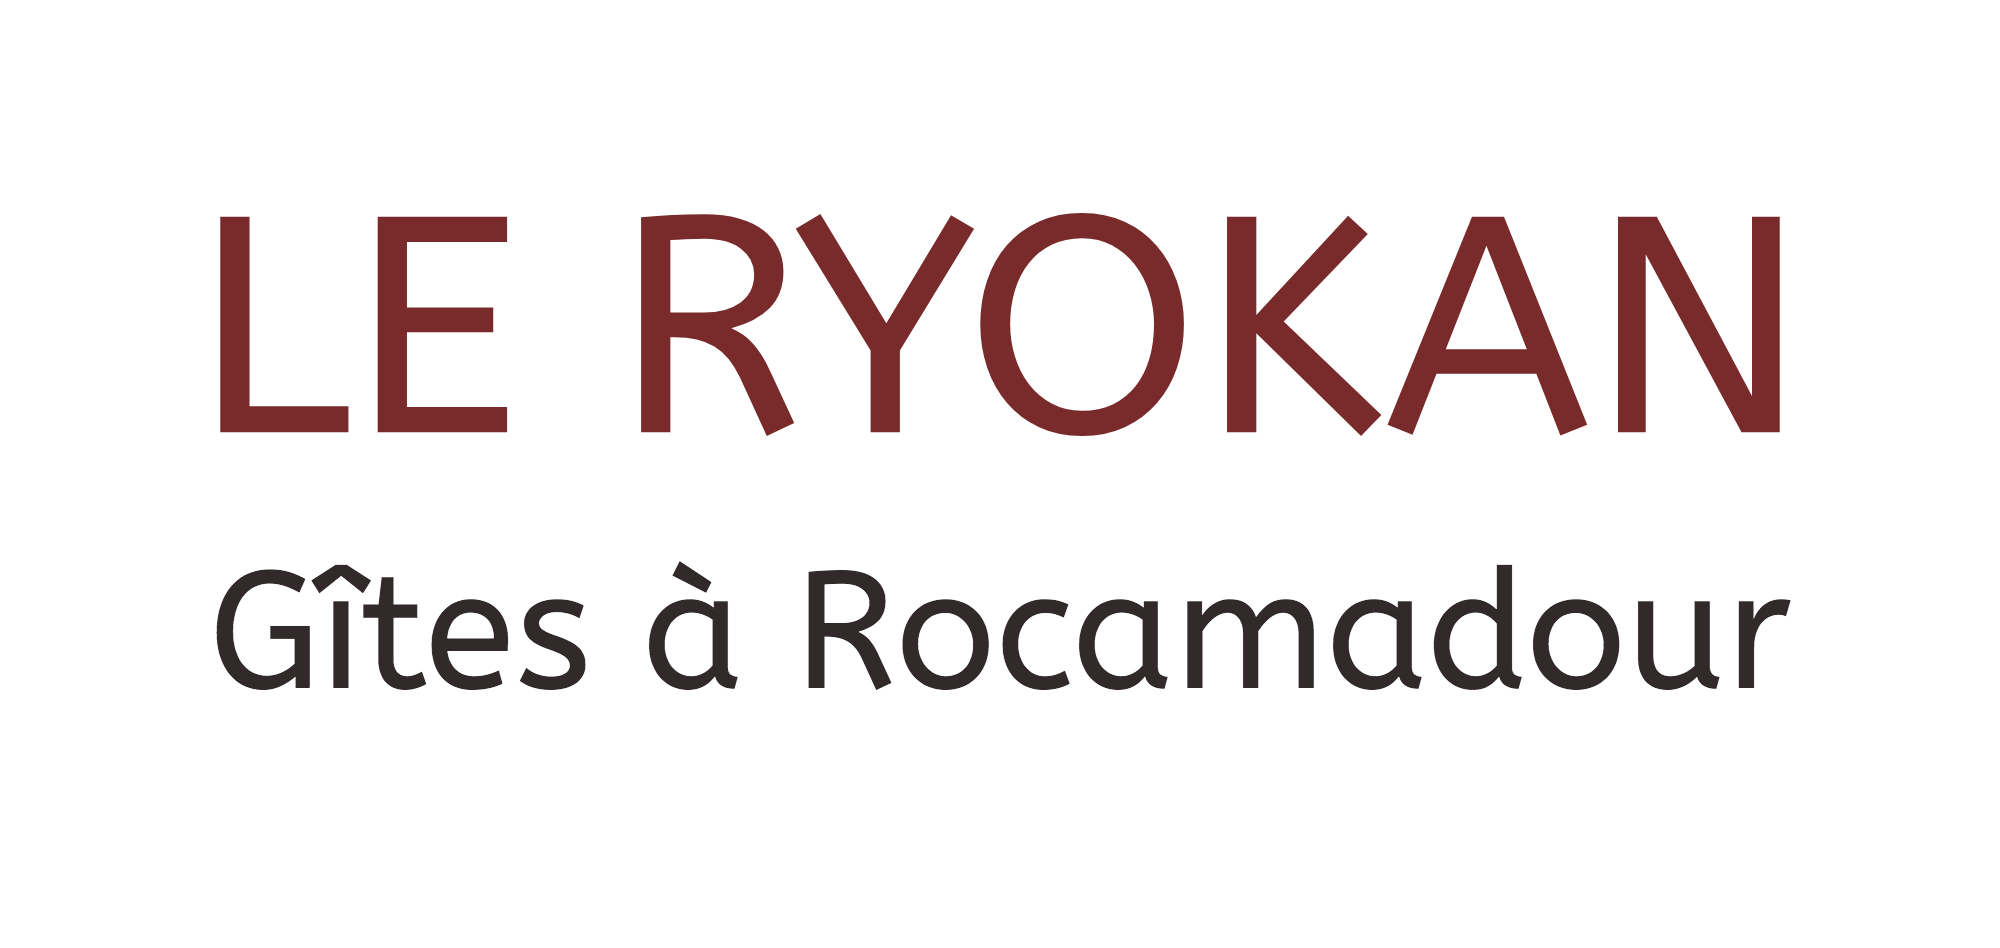 Le Ryokan